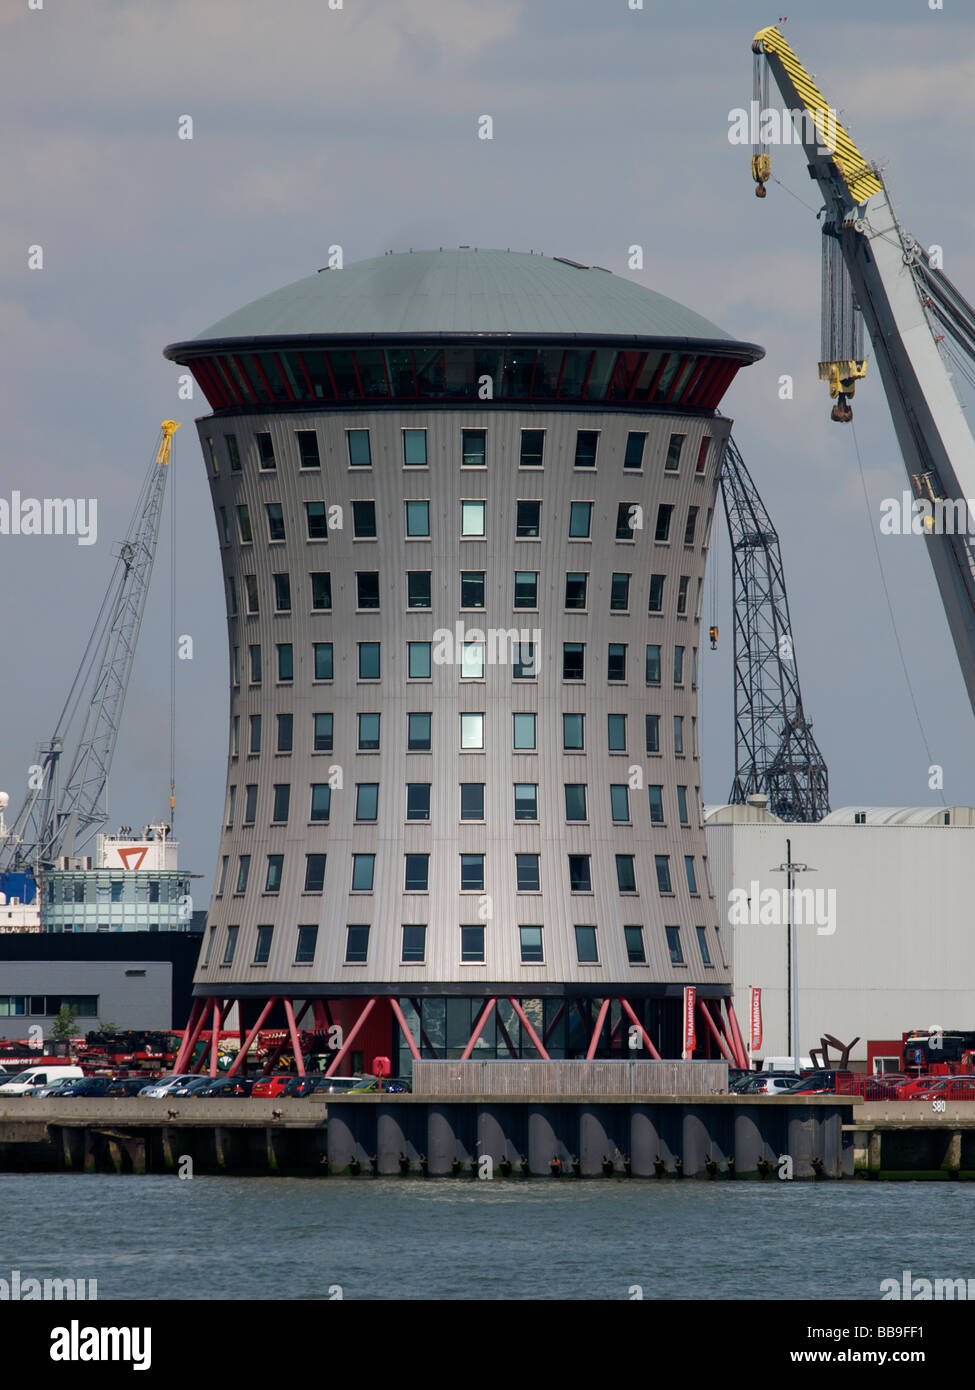 L'architecture contemporaine au siège de la société néerlandaise Mammoet sur la rive de la Meuse, dans le port de Rotterdam Banque D'Images